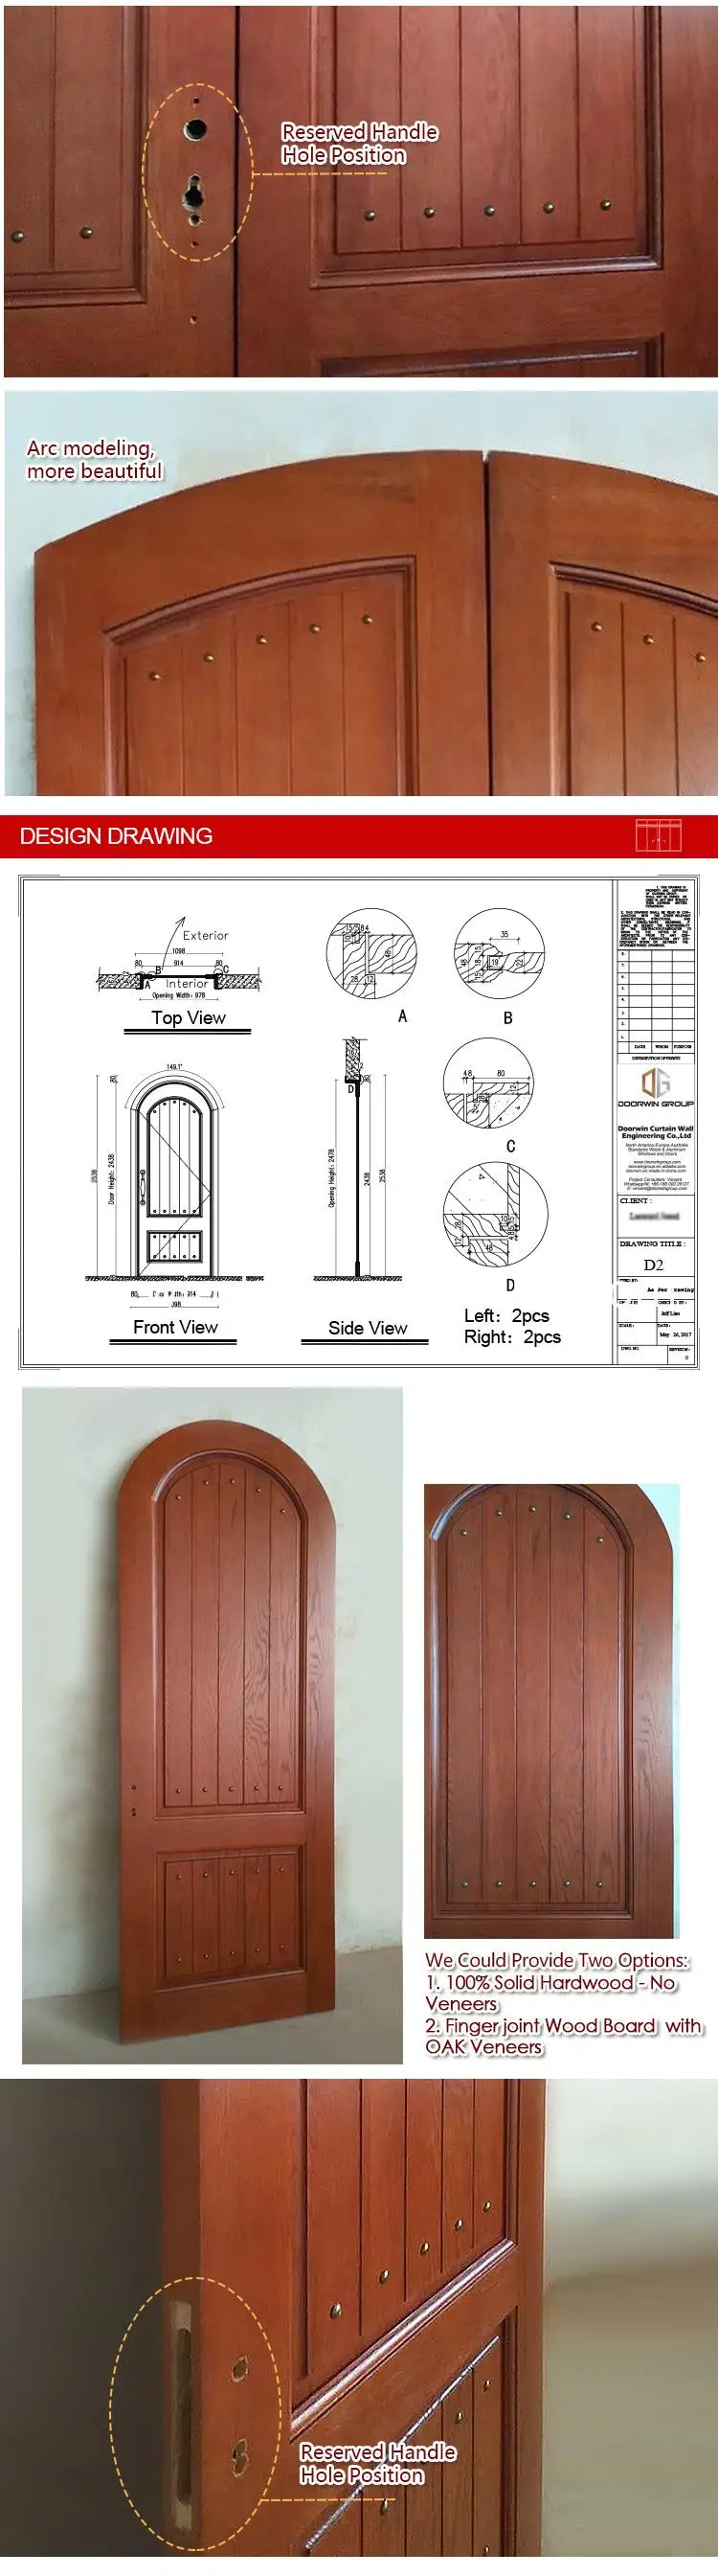 Best selling items wooden french doors wood panel front door look